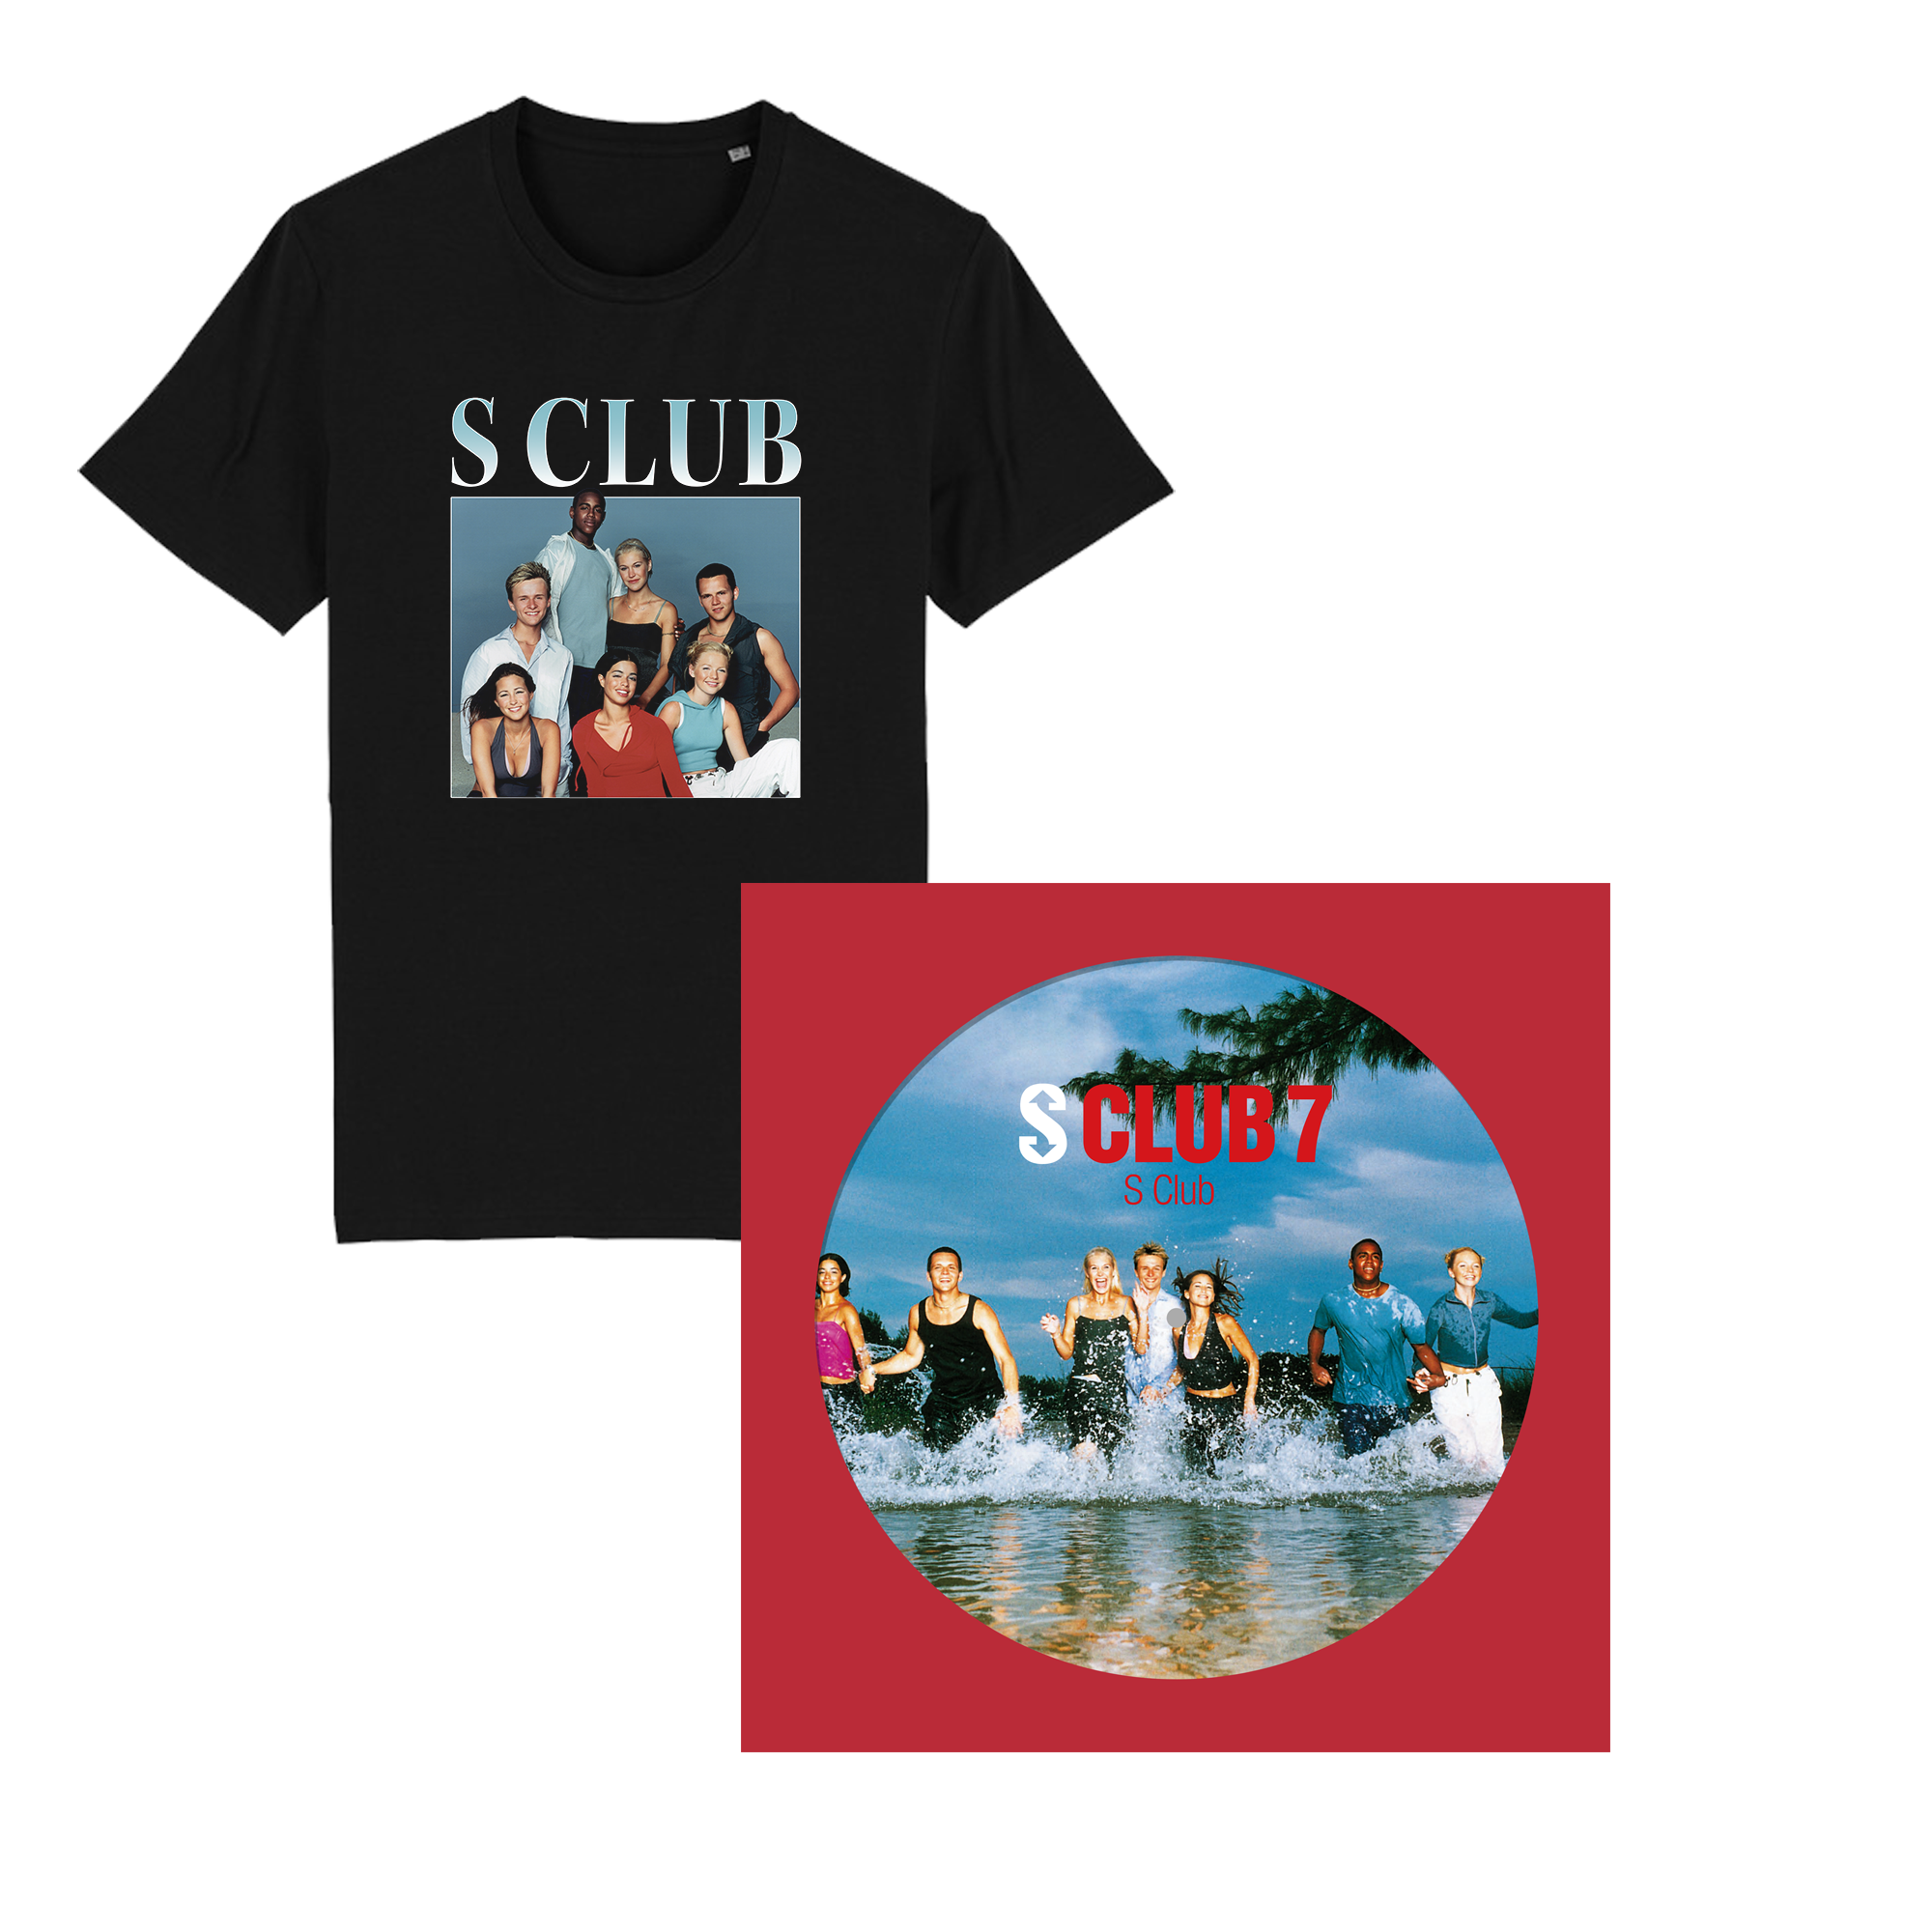 S Club: Picture Disc Vinyl LP + Black Homage T-Shirt